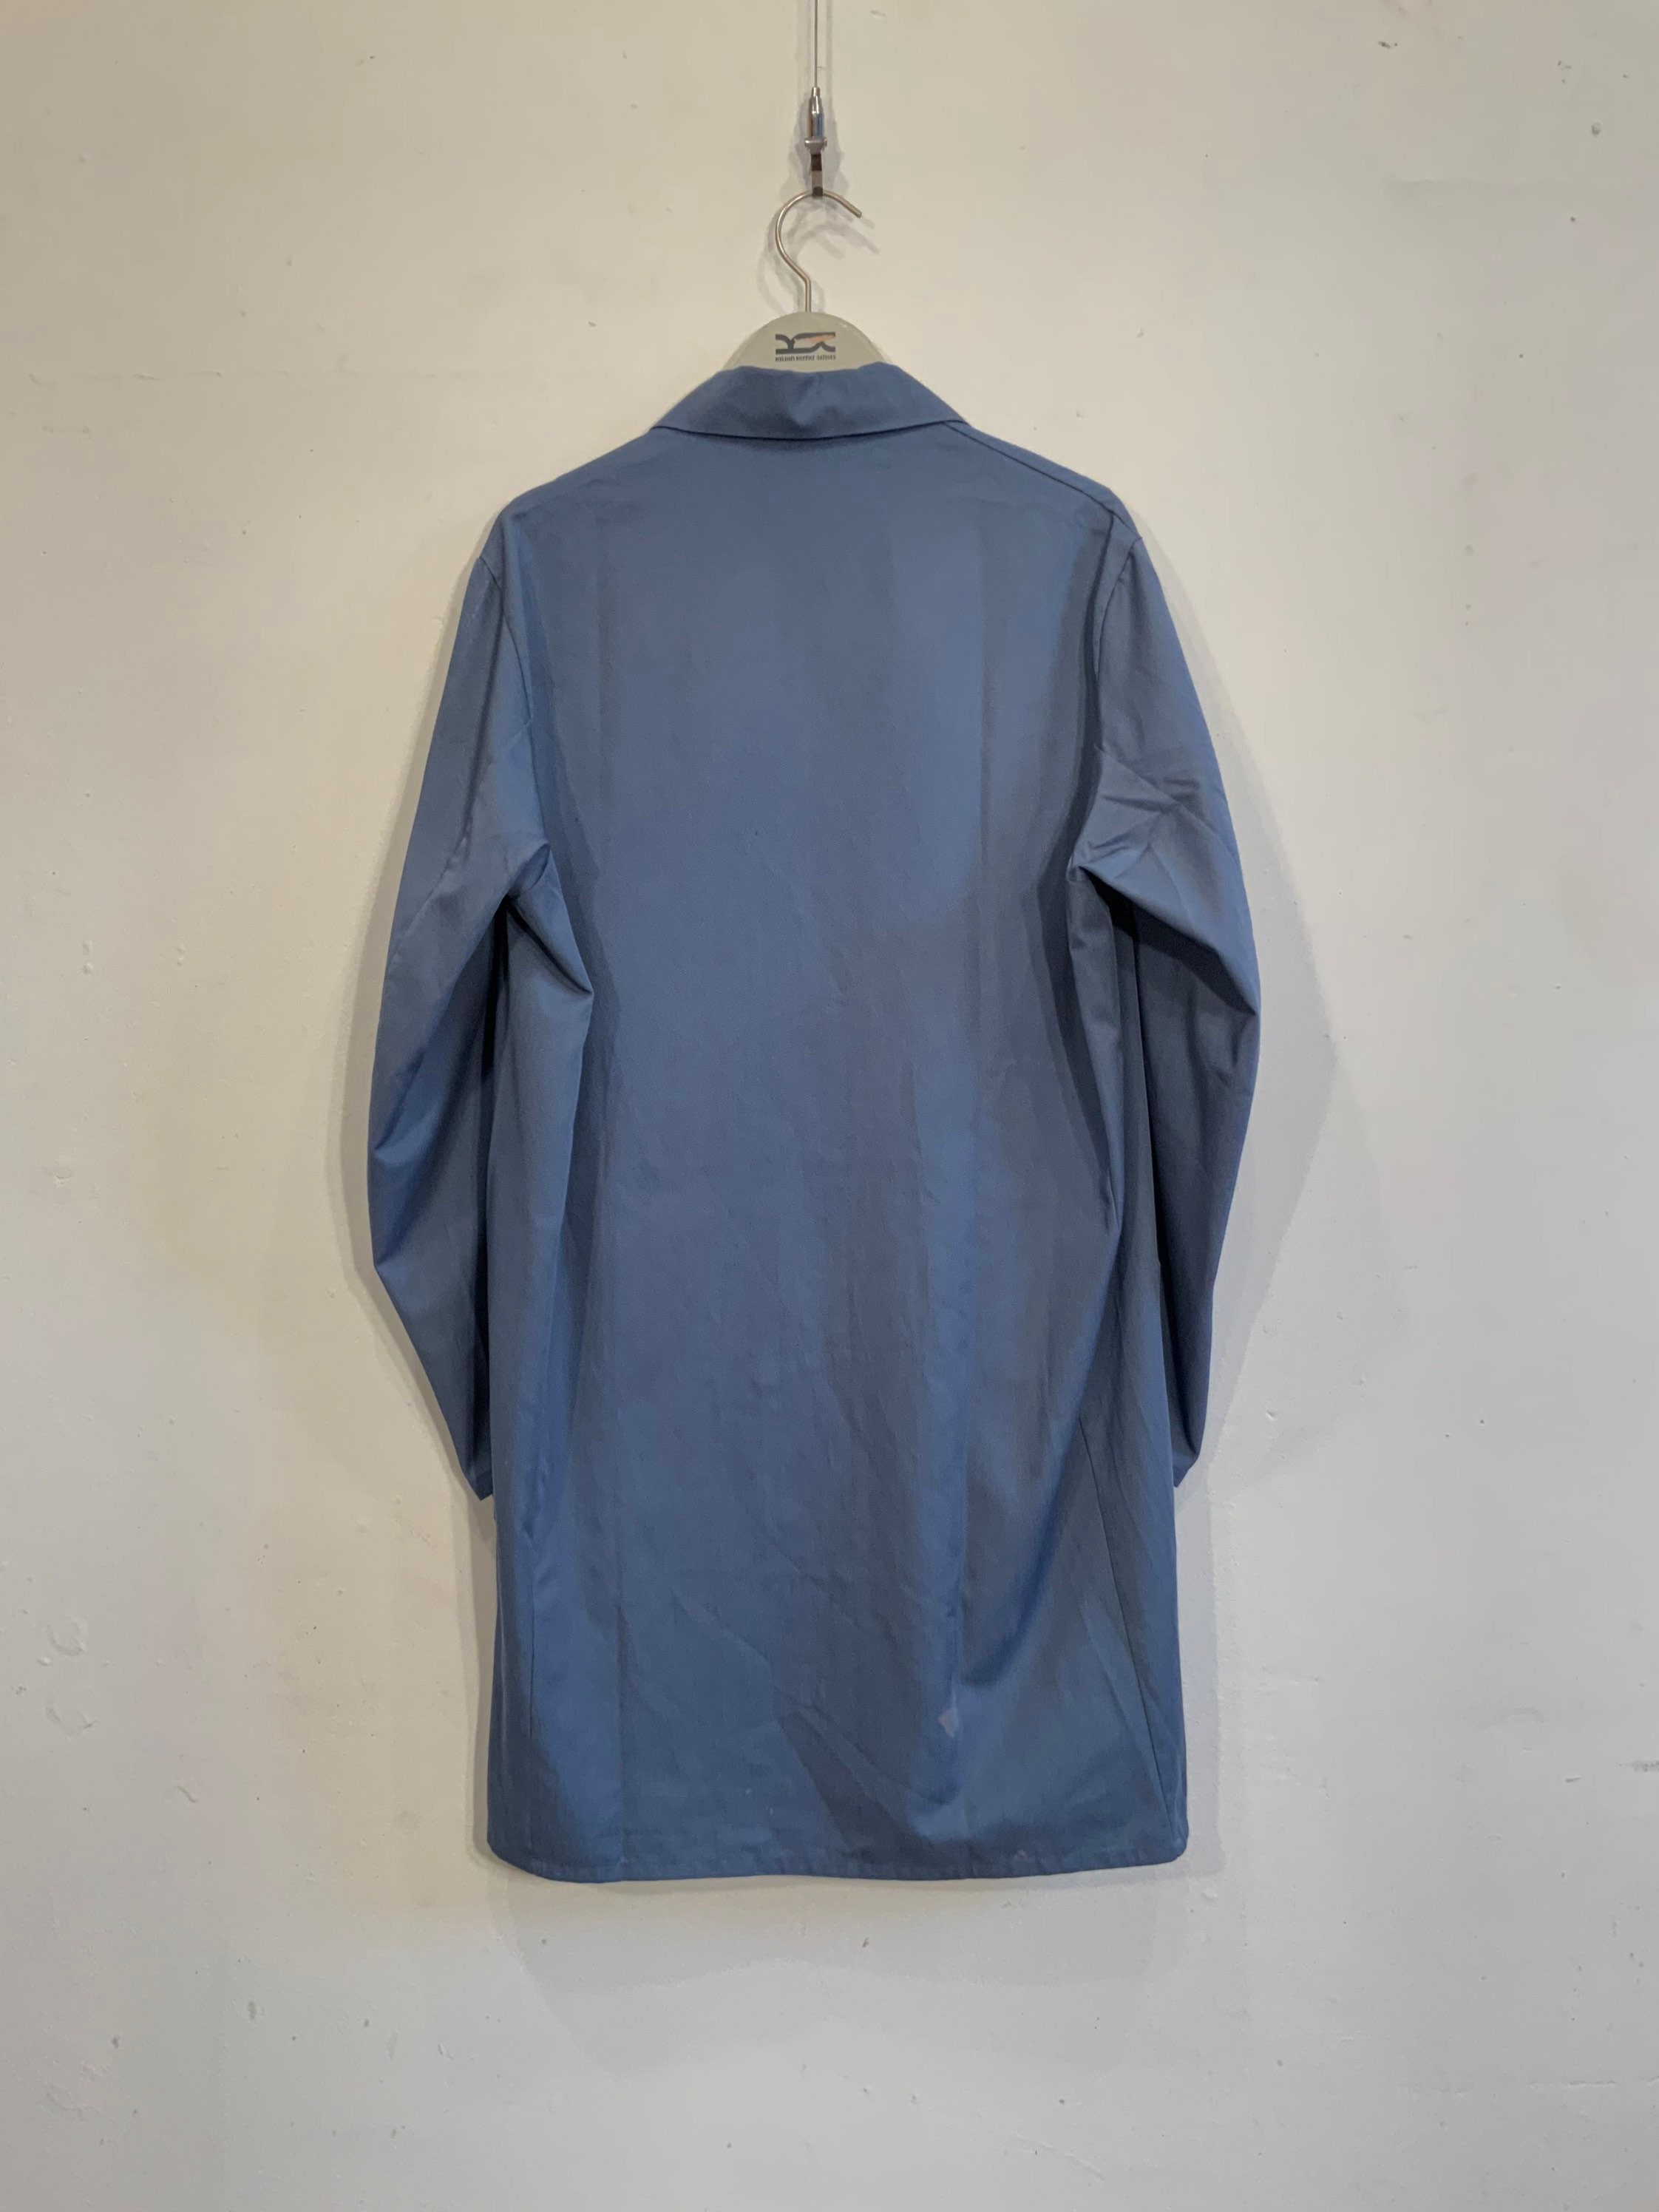 French workwear overshirt/jacket in soft indigo cotton great | Etsy